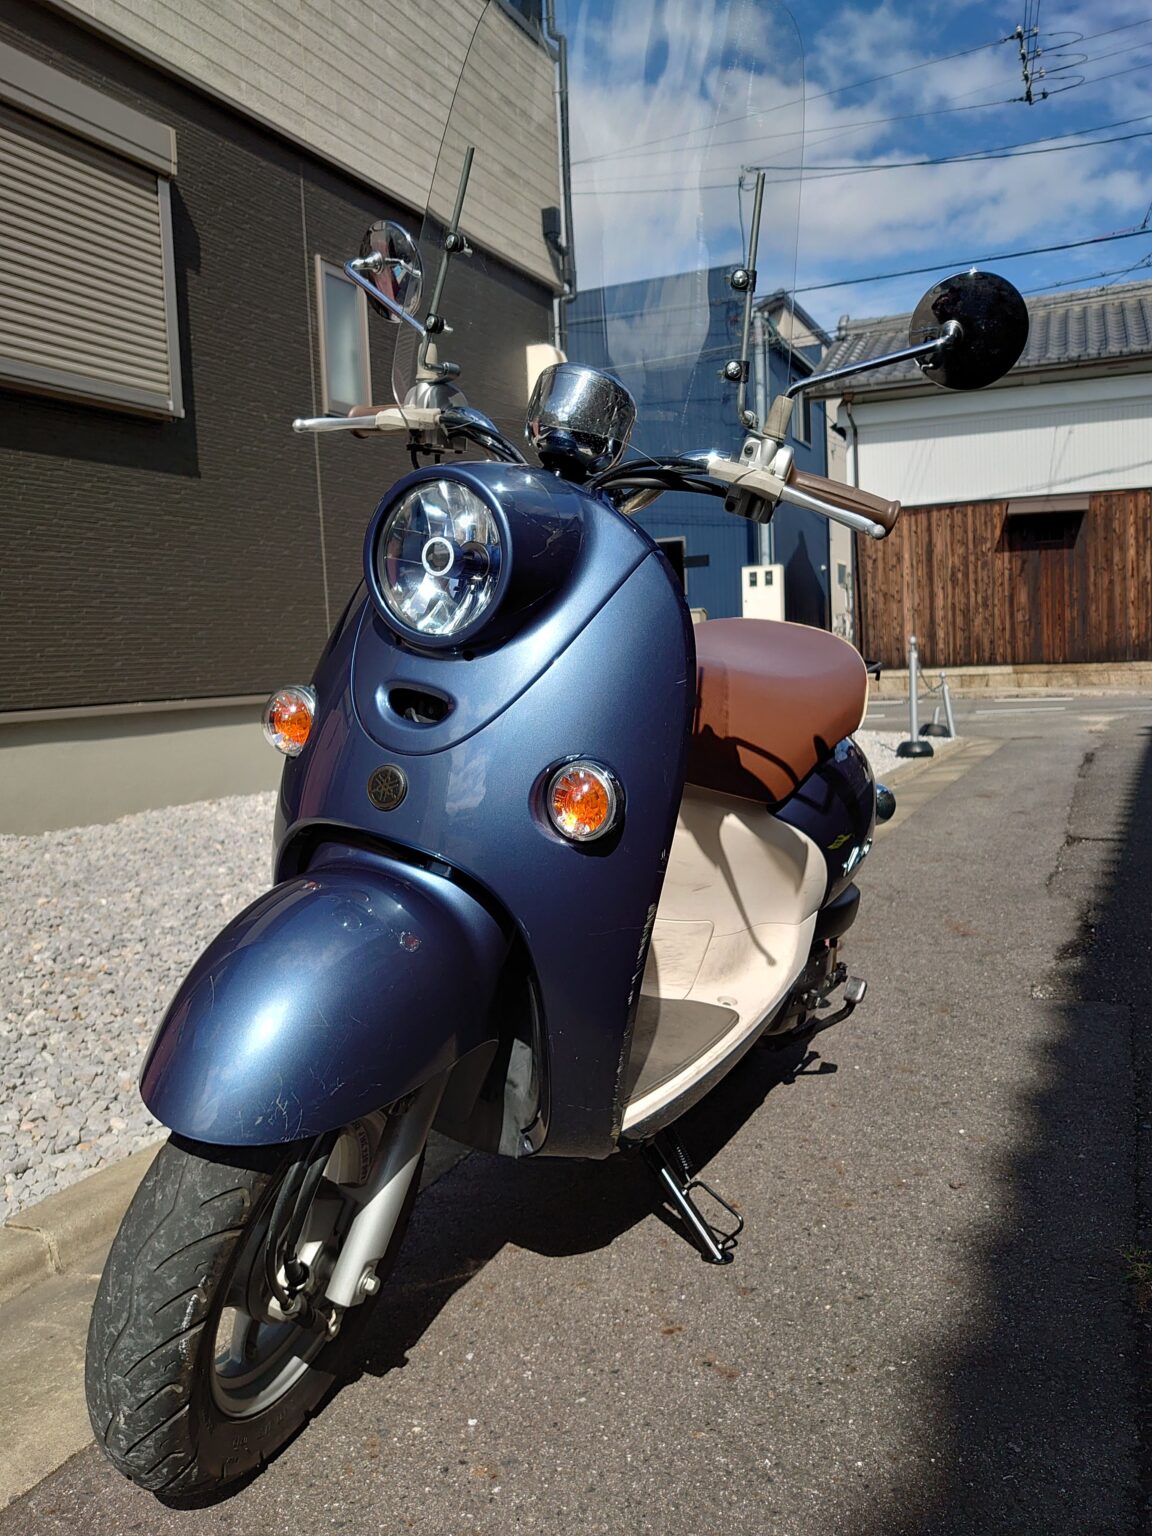 ビーノsa37j外装カスタムパーツで快適仕様 ゆるキャン ビーノでバイクライフ ぶーさんブログ